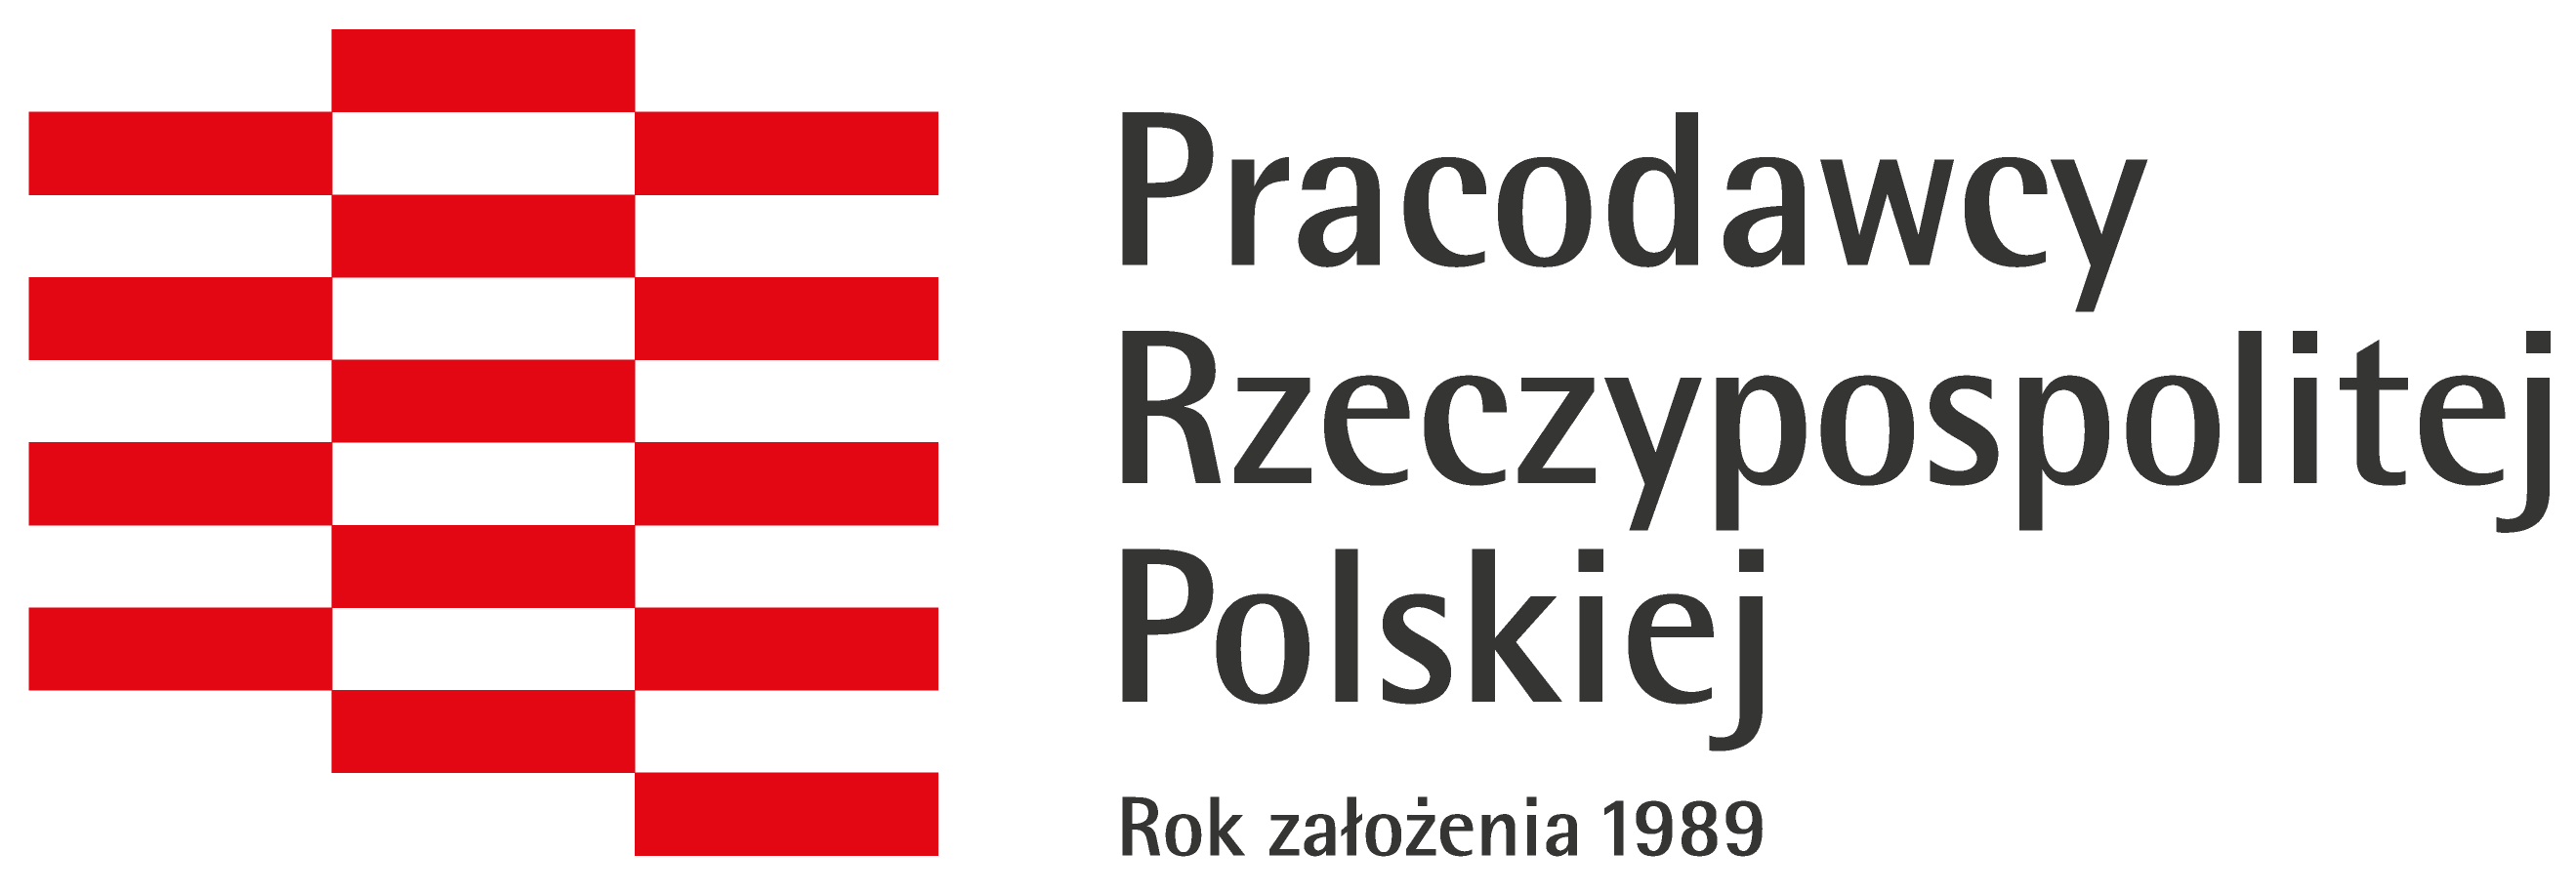 Pracodawcy Rzeczpospolitej Polskiej